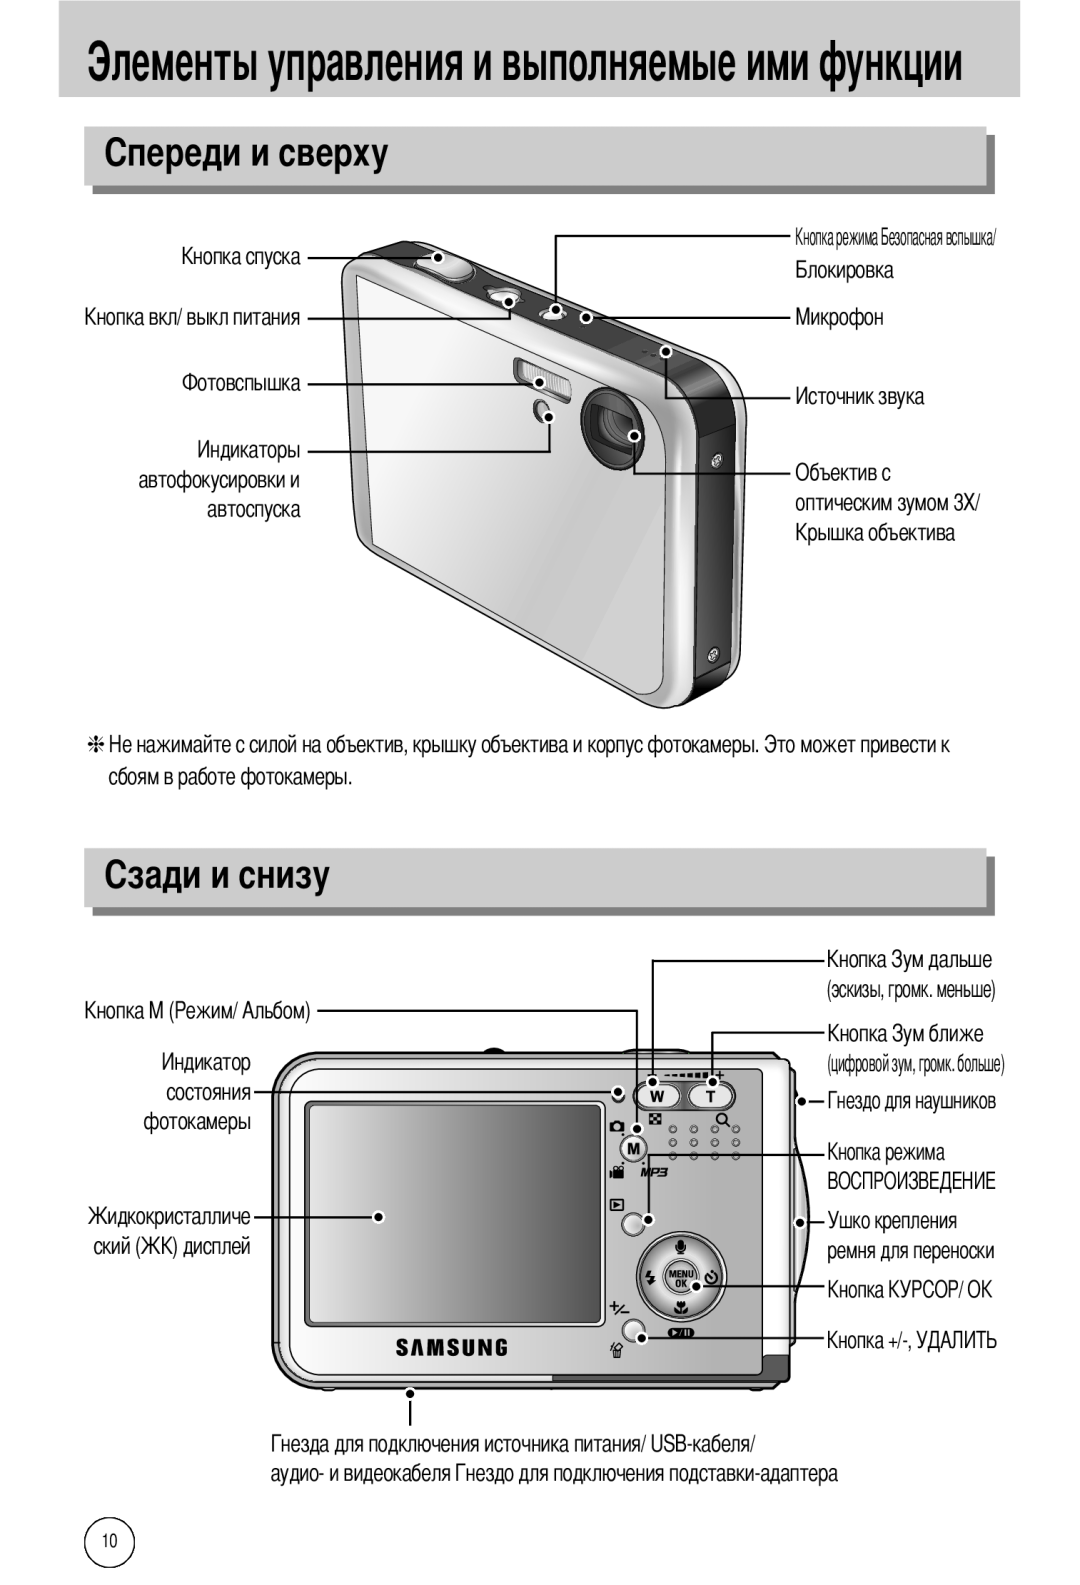 Samsung EC-I50ZZSBA/FR Элементы управления и выполняемые ими функции, сбоям в работе фотокамеры состояния фотокамеры ский 